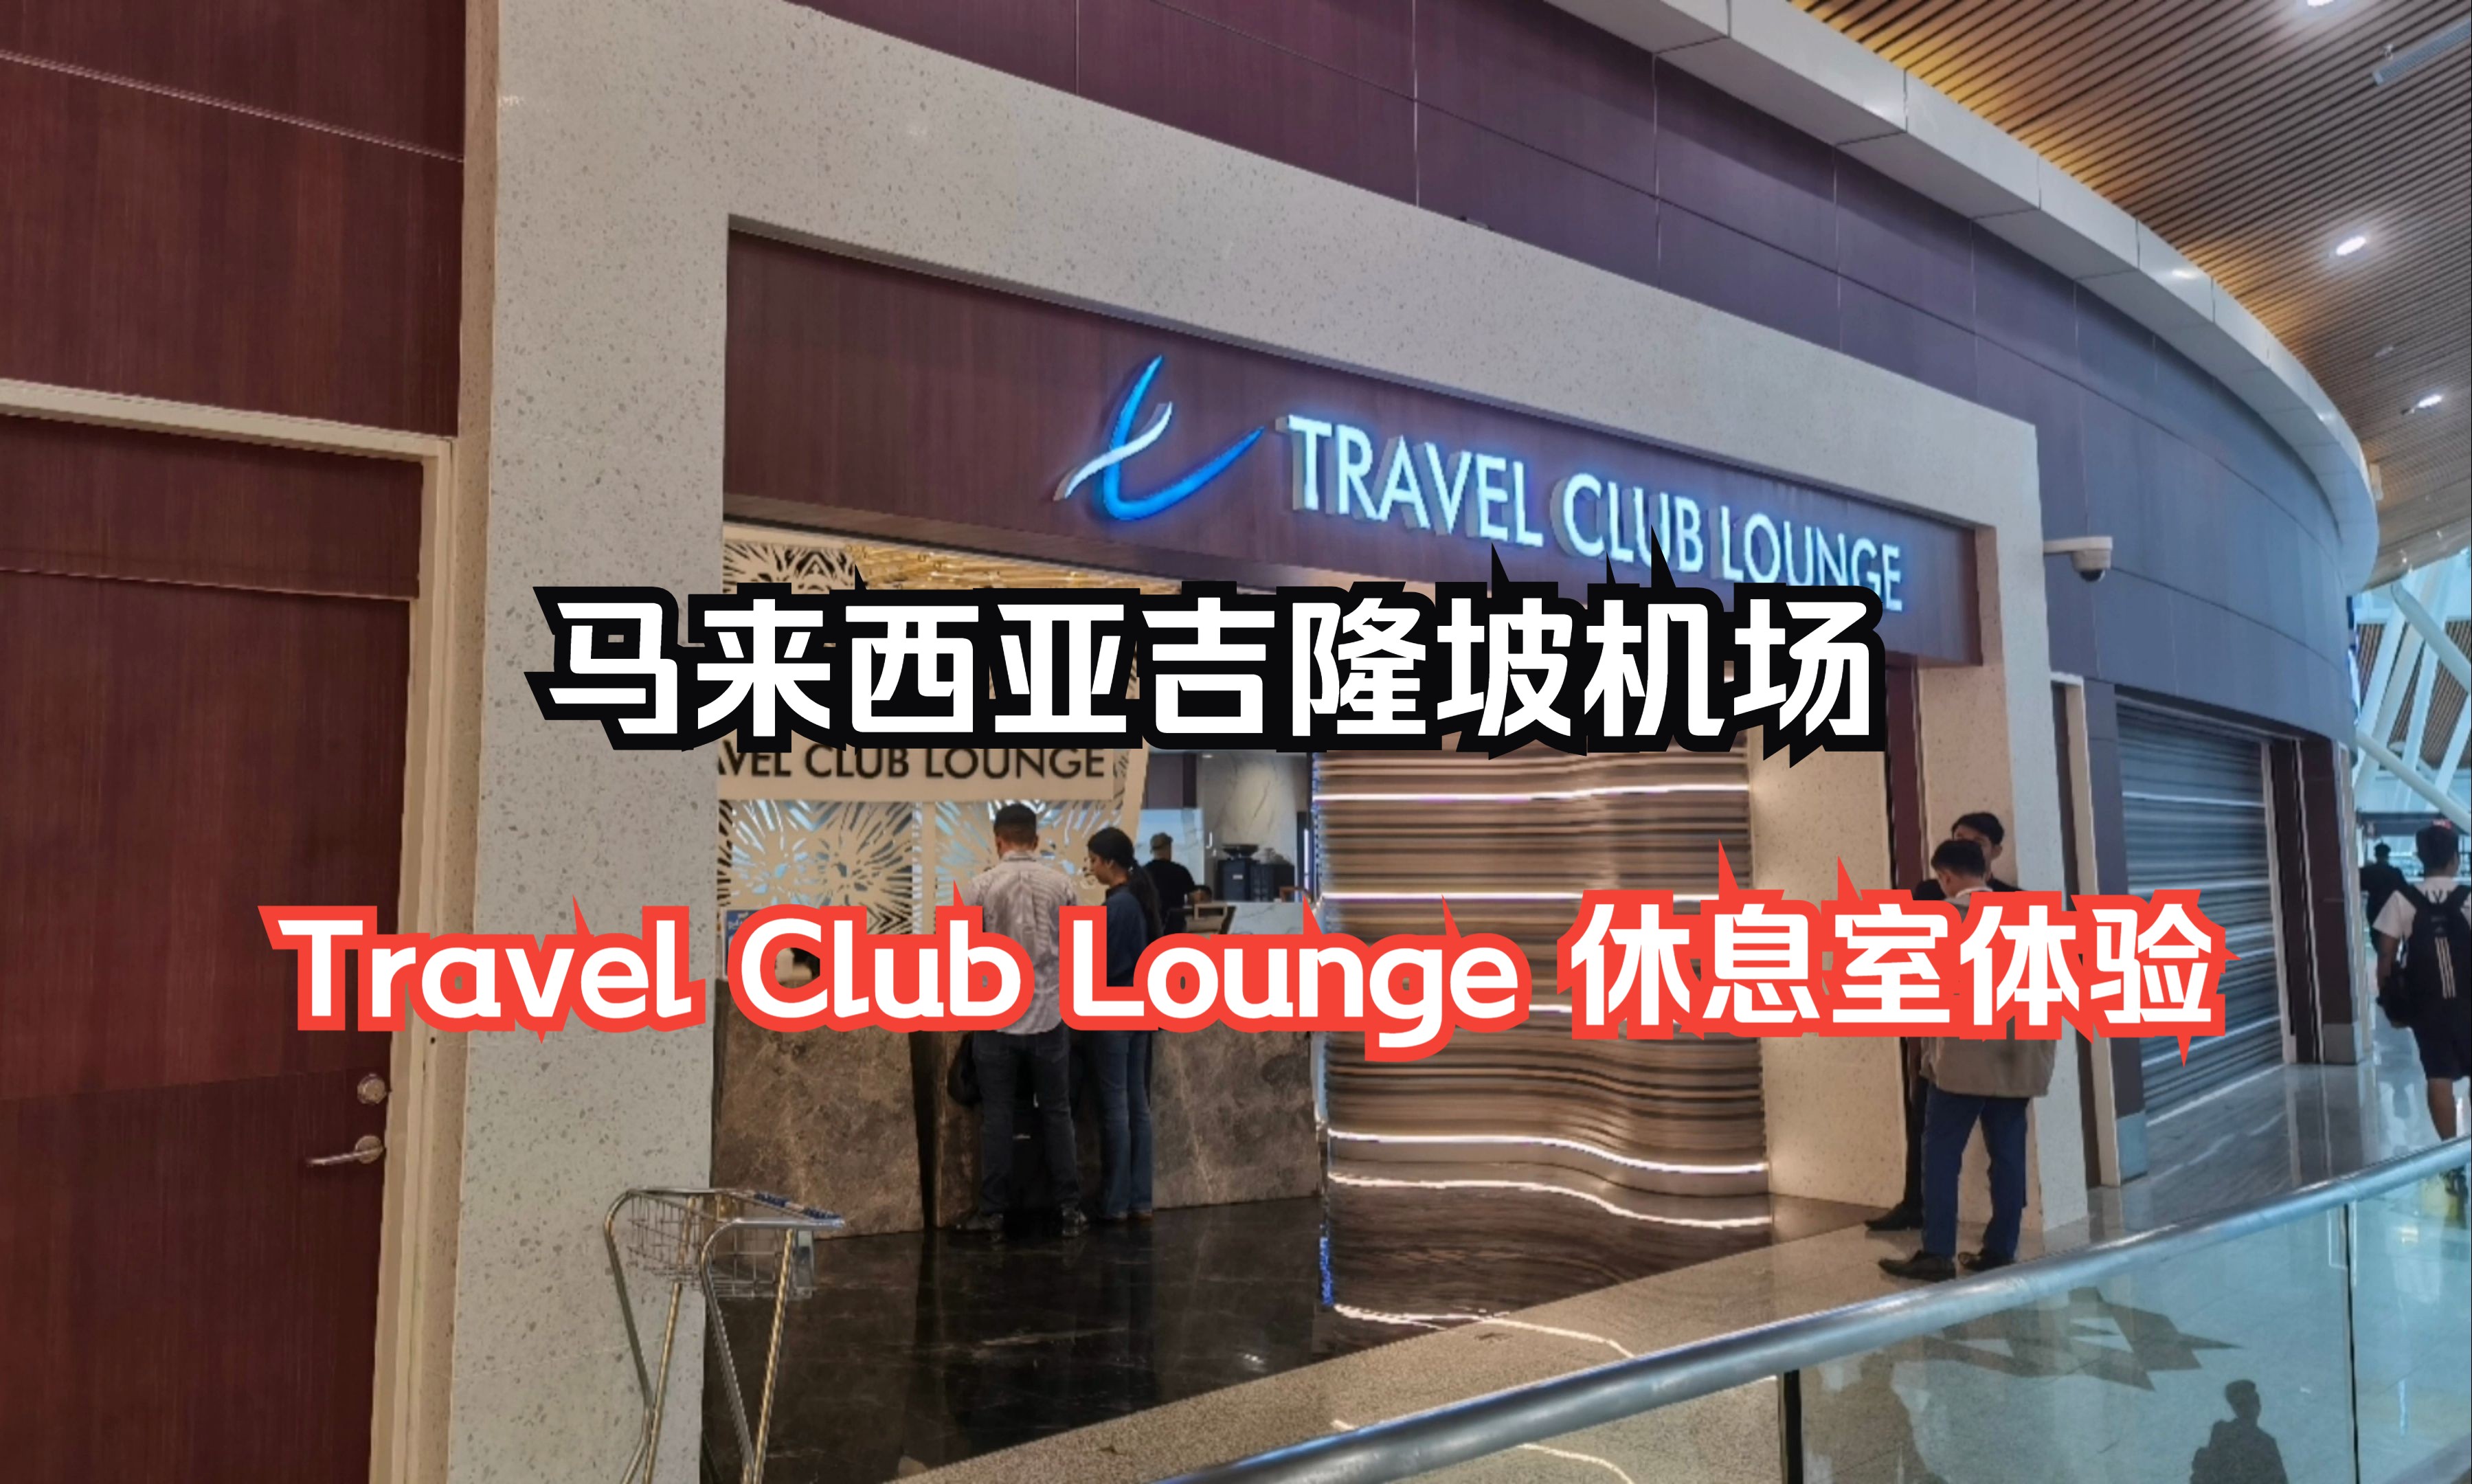 打卡国际机场贵宾休息室系列之：餐食不错，马来西亚吉隆坡国际机场T1卫星楼Travel Club Lounge休息室体验